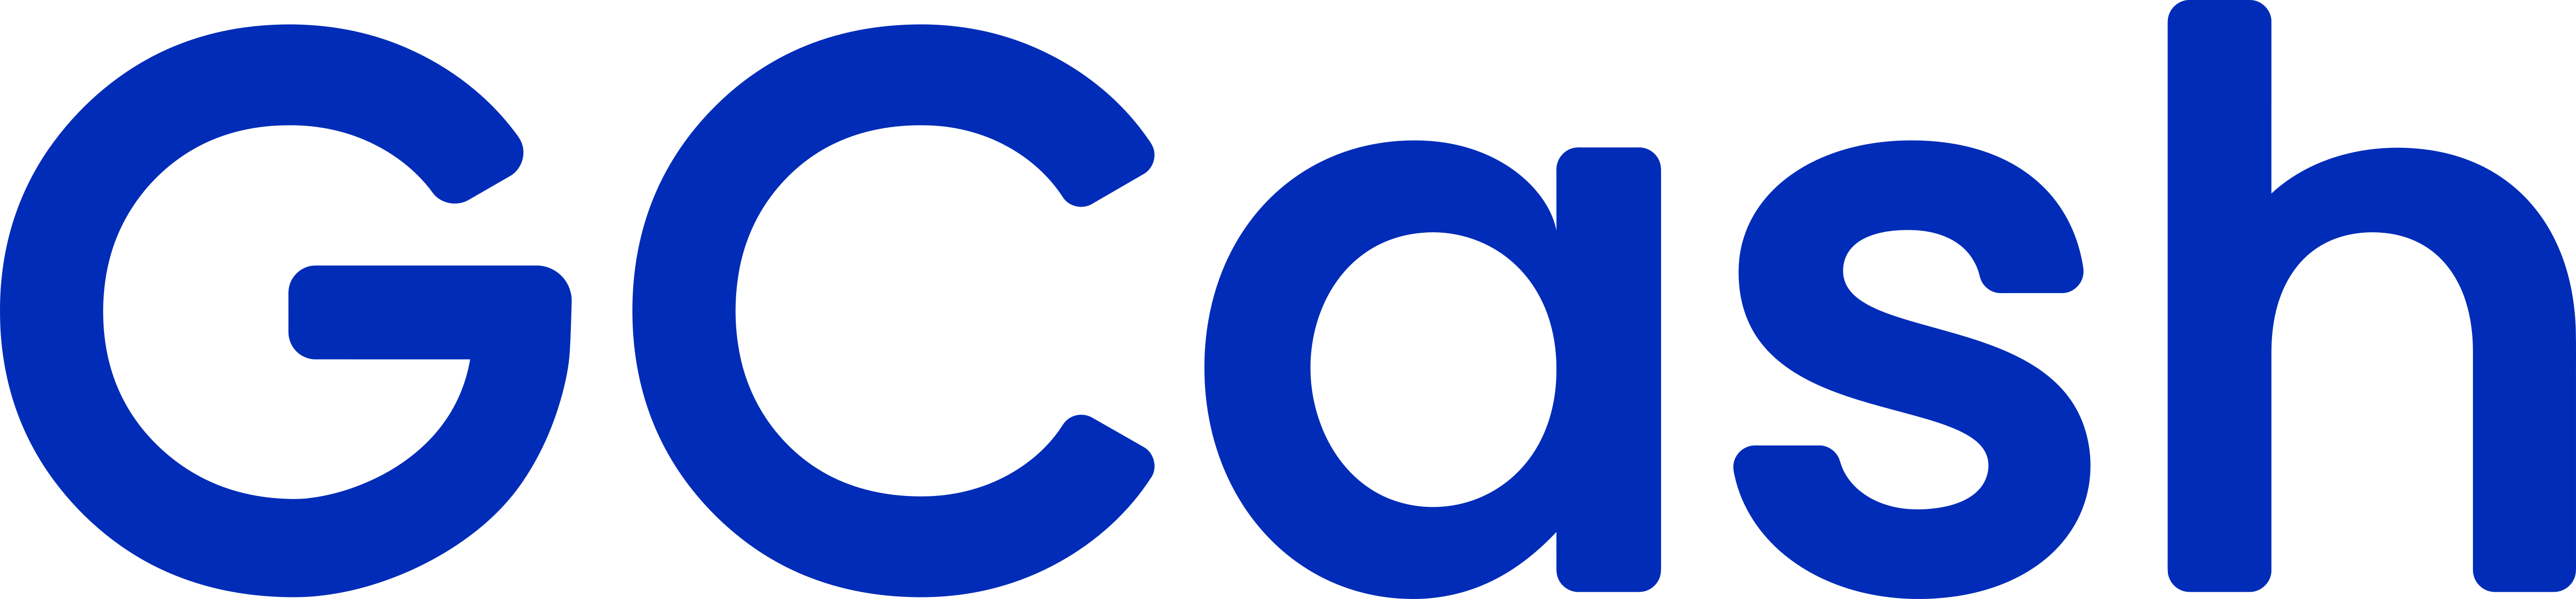 GCash Logo - GCash – Logos Download